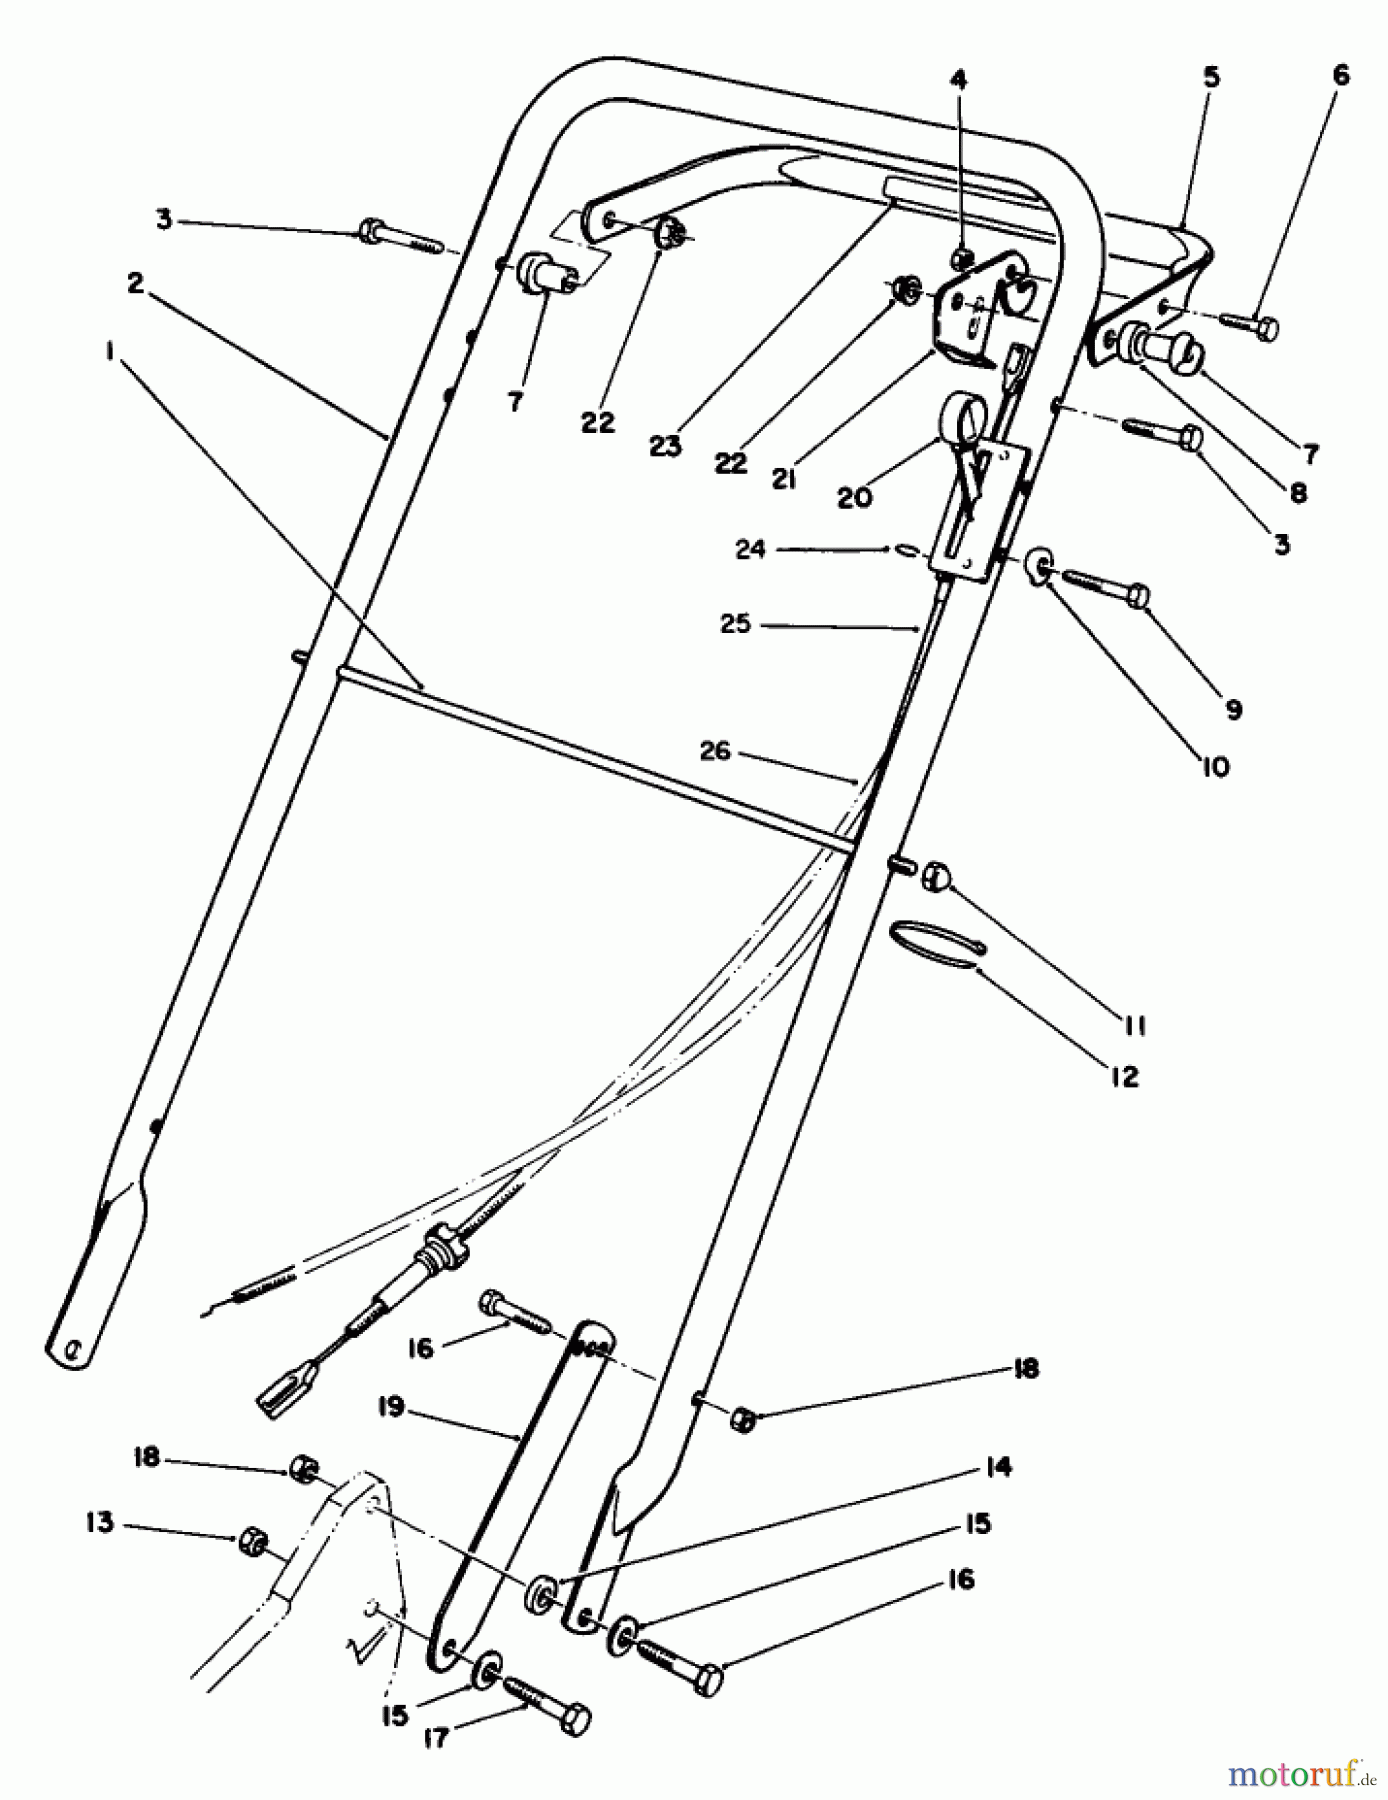  Toro Neu Mowers, Walk-Behind Seite 2 22035 - Toro Lawnmower, 1991 (1000001-1999999) HANDLE ASSEMBLY (MODEL 22035)